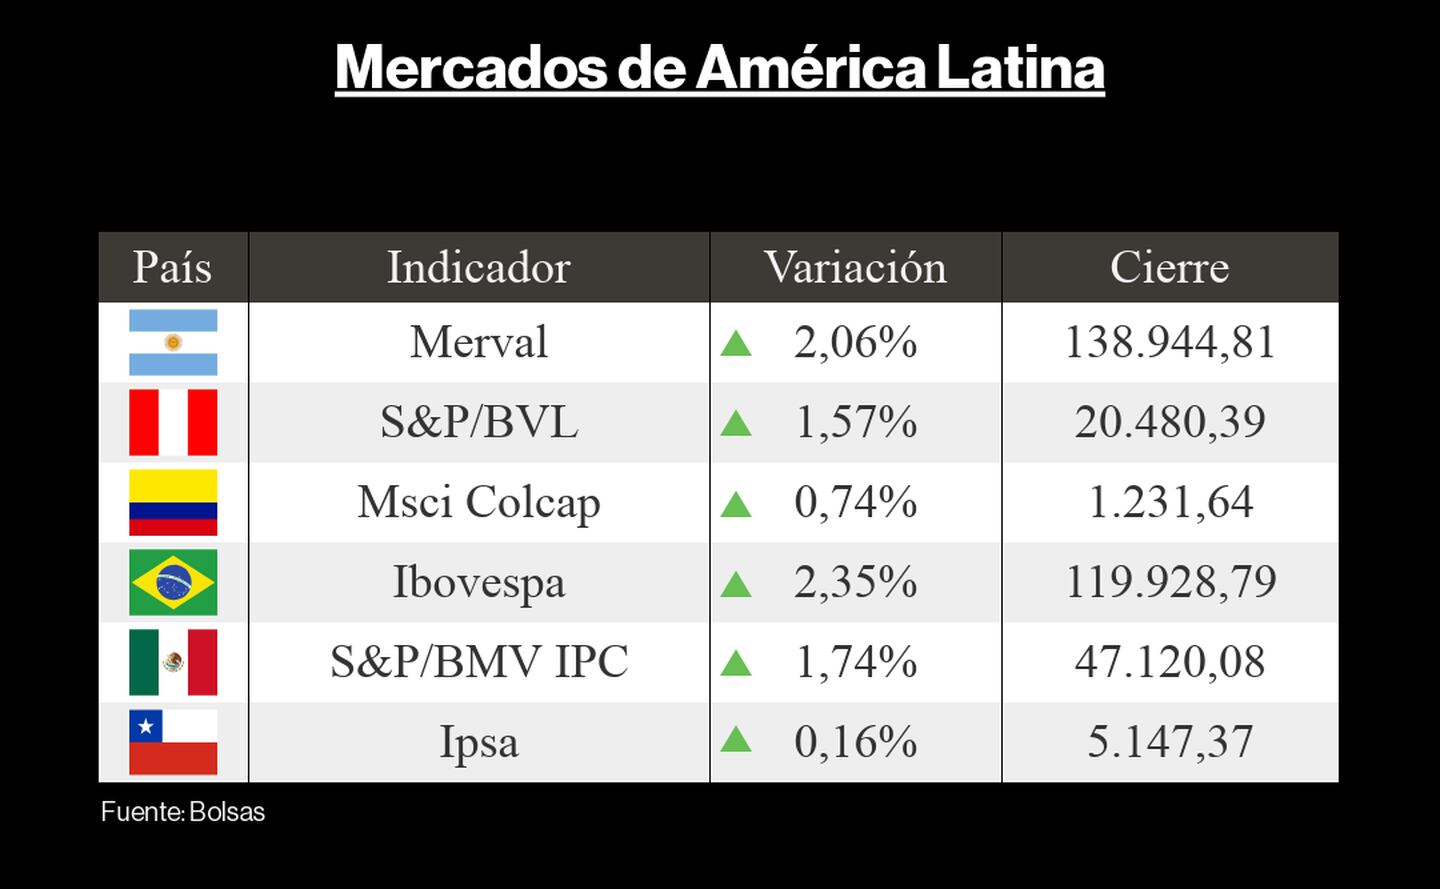 Mercados América Latina 21 octubredfd